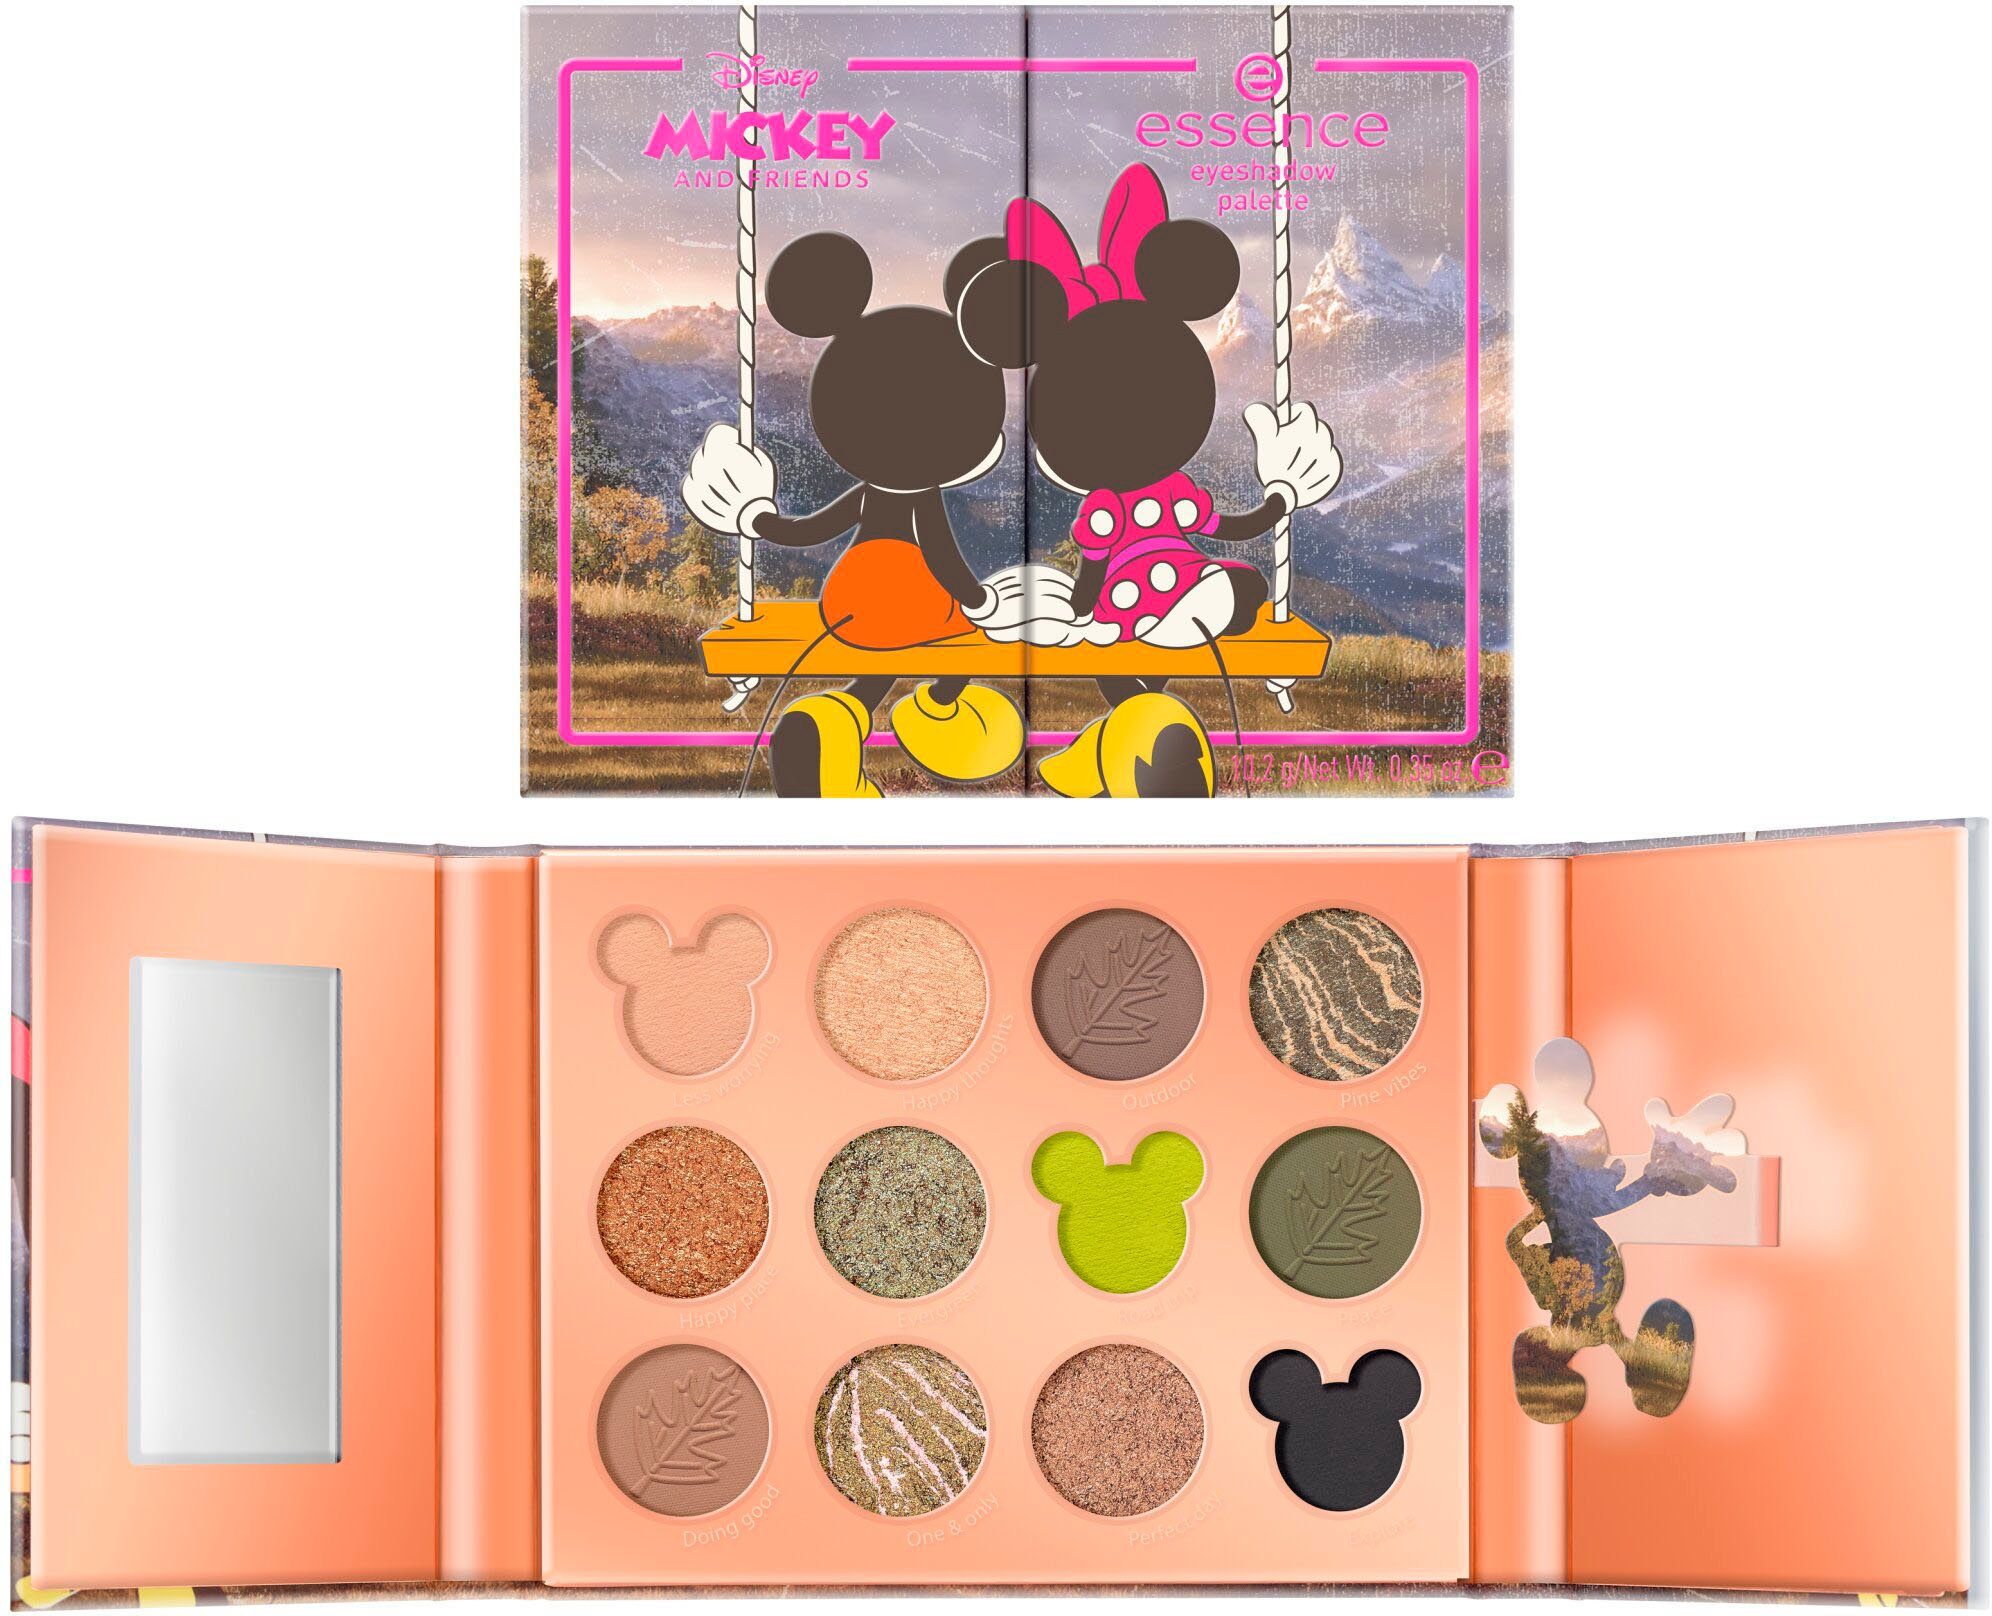 Essence Lidschatten-Palette Disney Mickey and palette, Looks abwechslungsreiche eyeshadow Augen-Make-Up Friends für